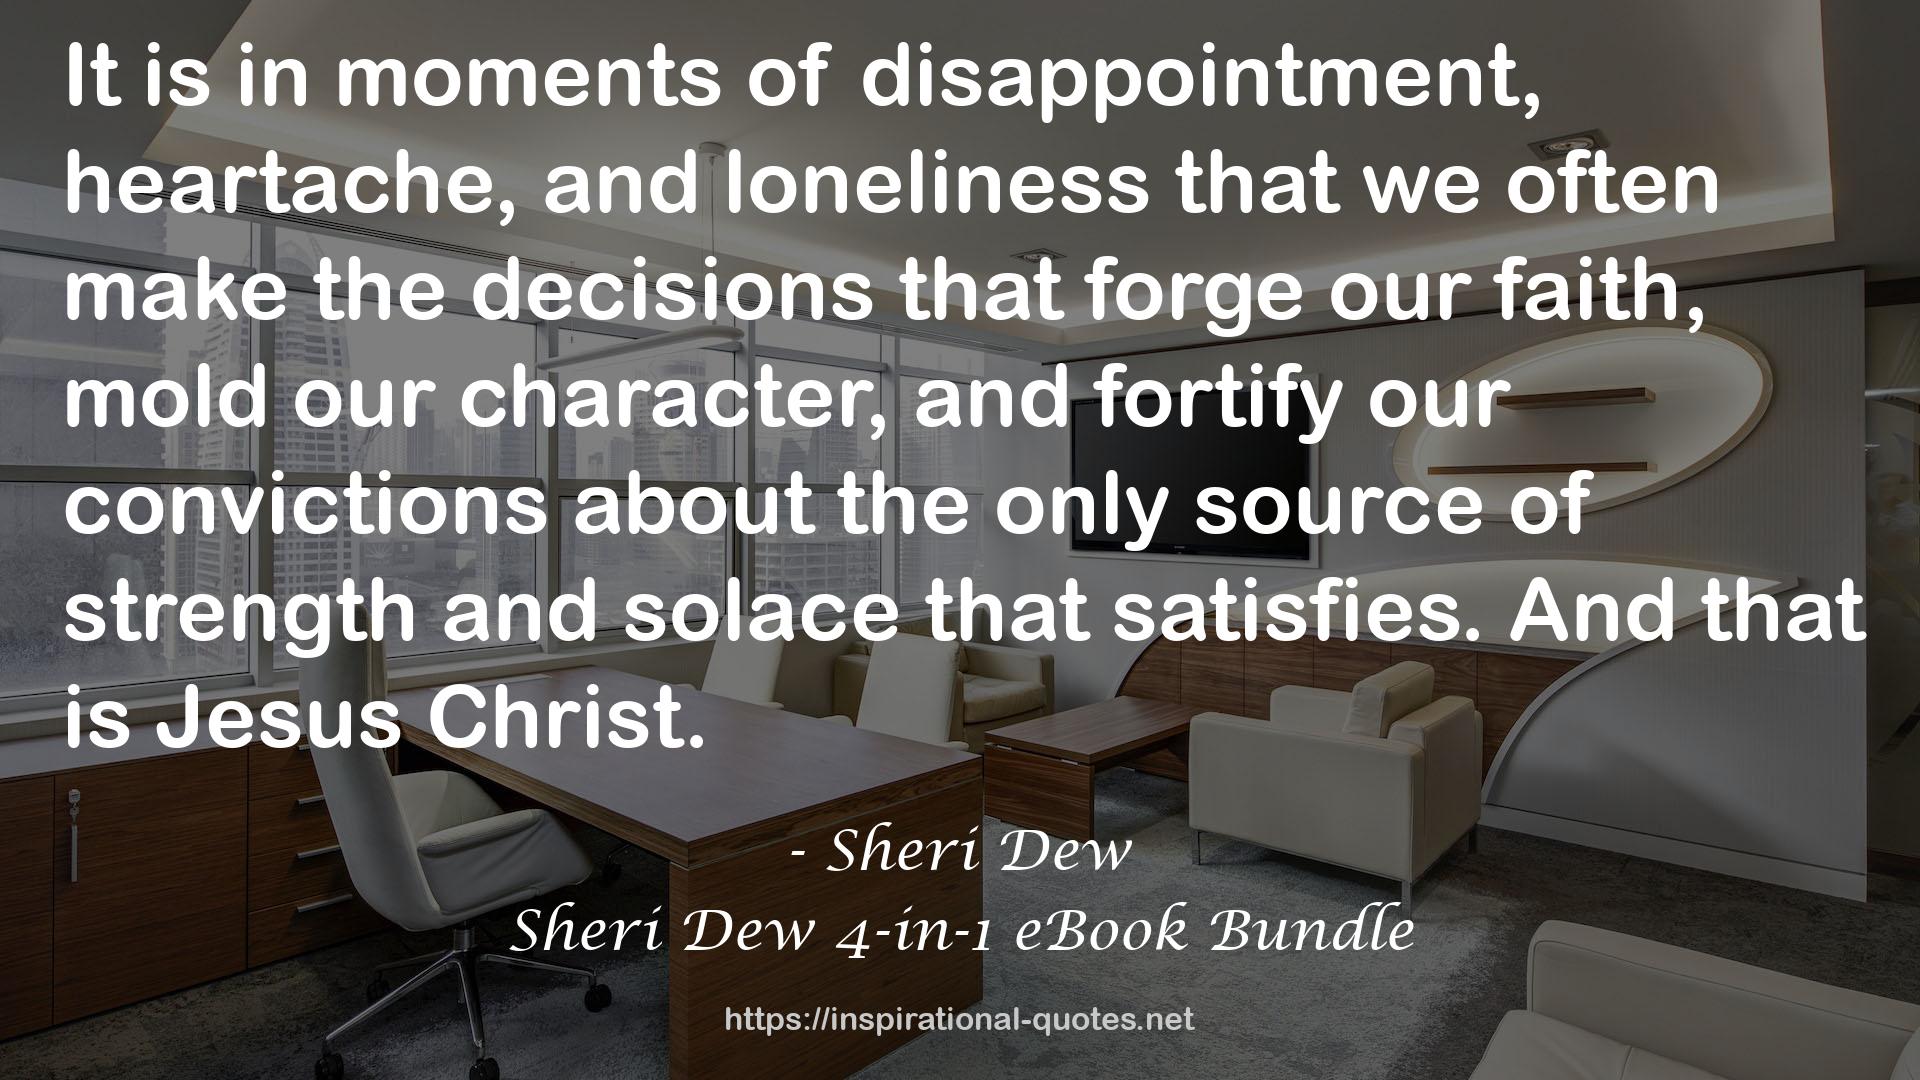 Sheri Dew 4-in-1 eBook Bundle QUOTES